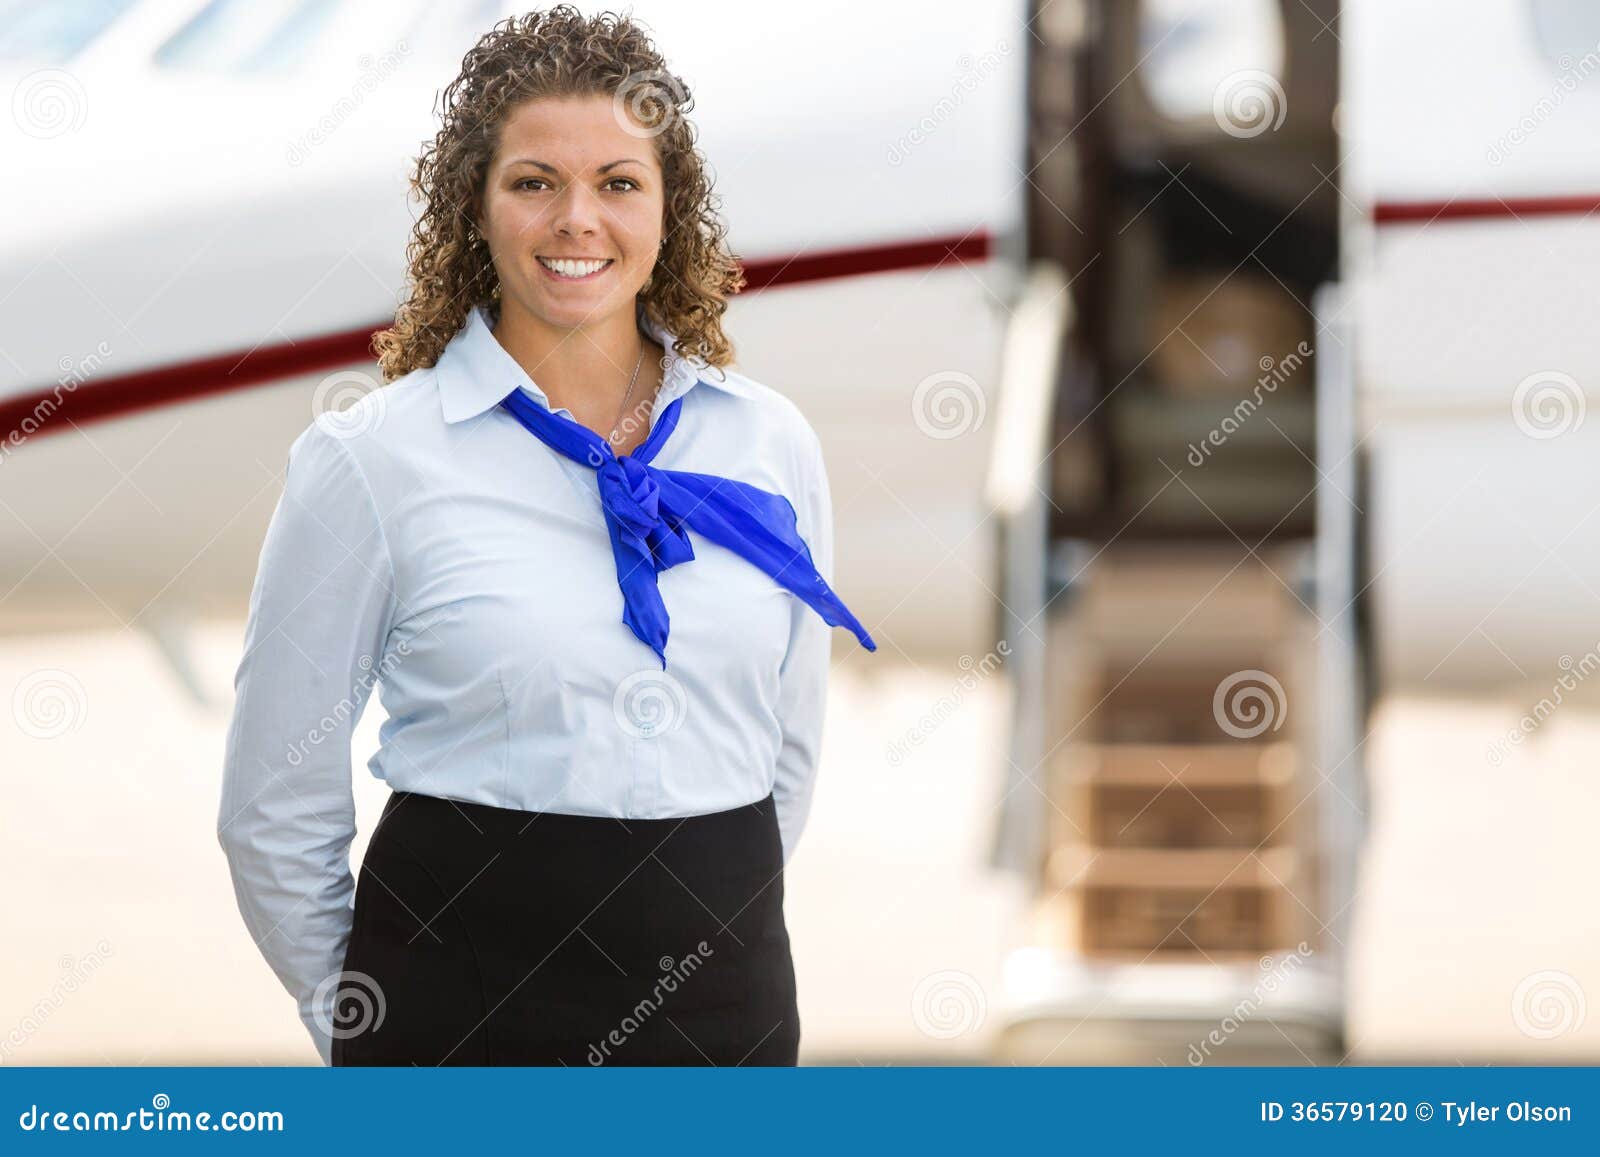 航空机务组空乘服装图片,飞机工作人员空乘服装图片-工作服厂家